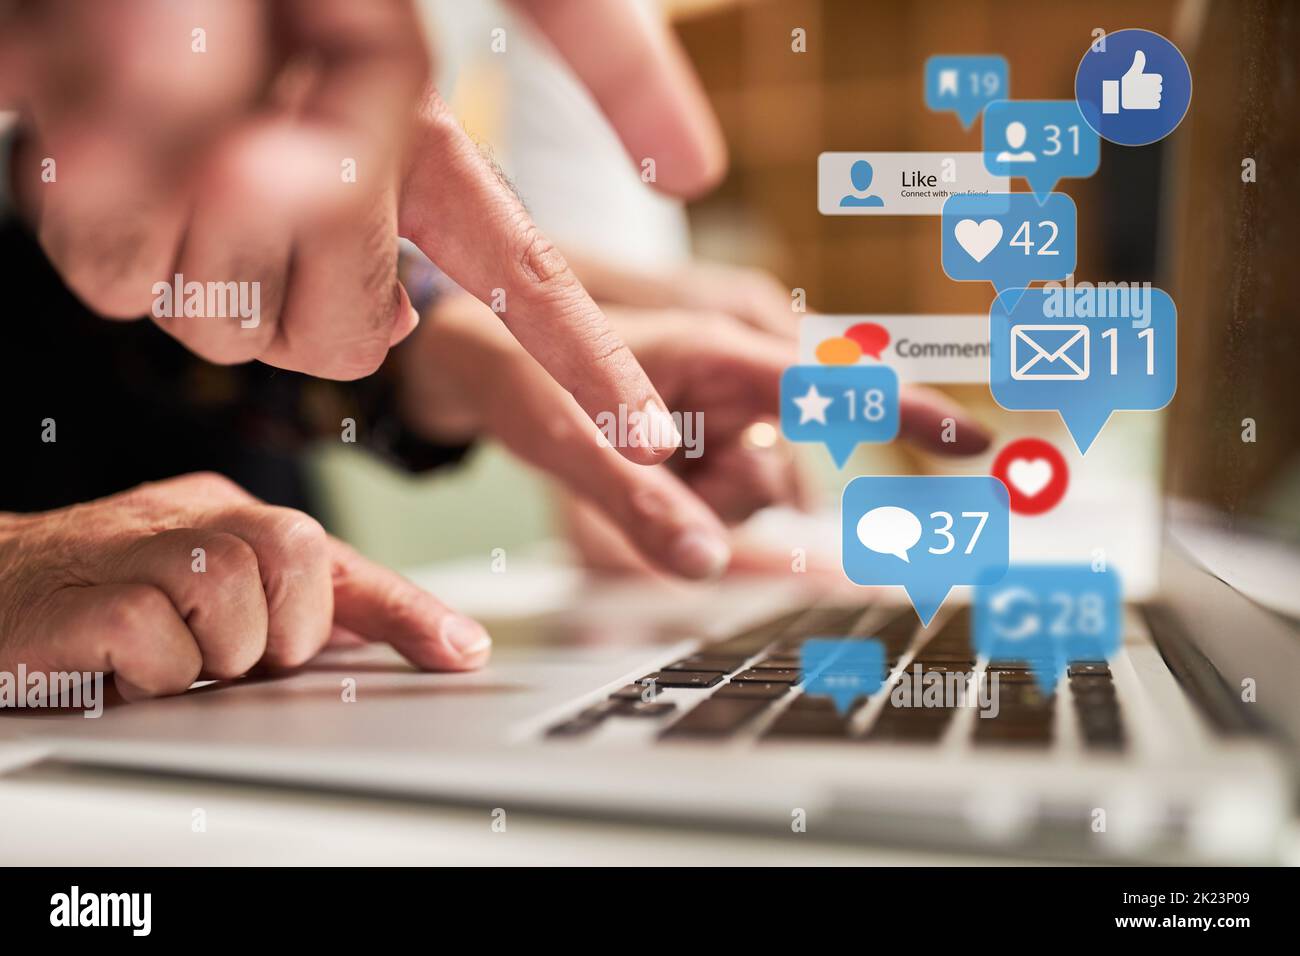 Digitazione con le dita sulla tastiera di un computer portatile con molte icone di notizie come concetto di social media Foto Stock